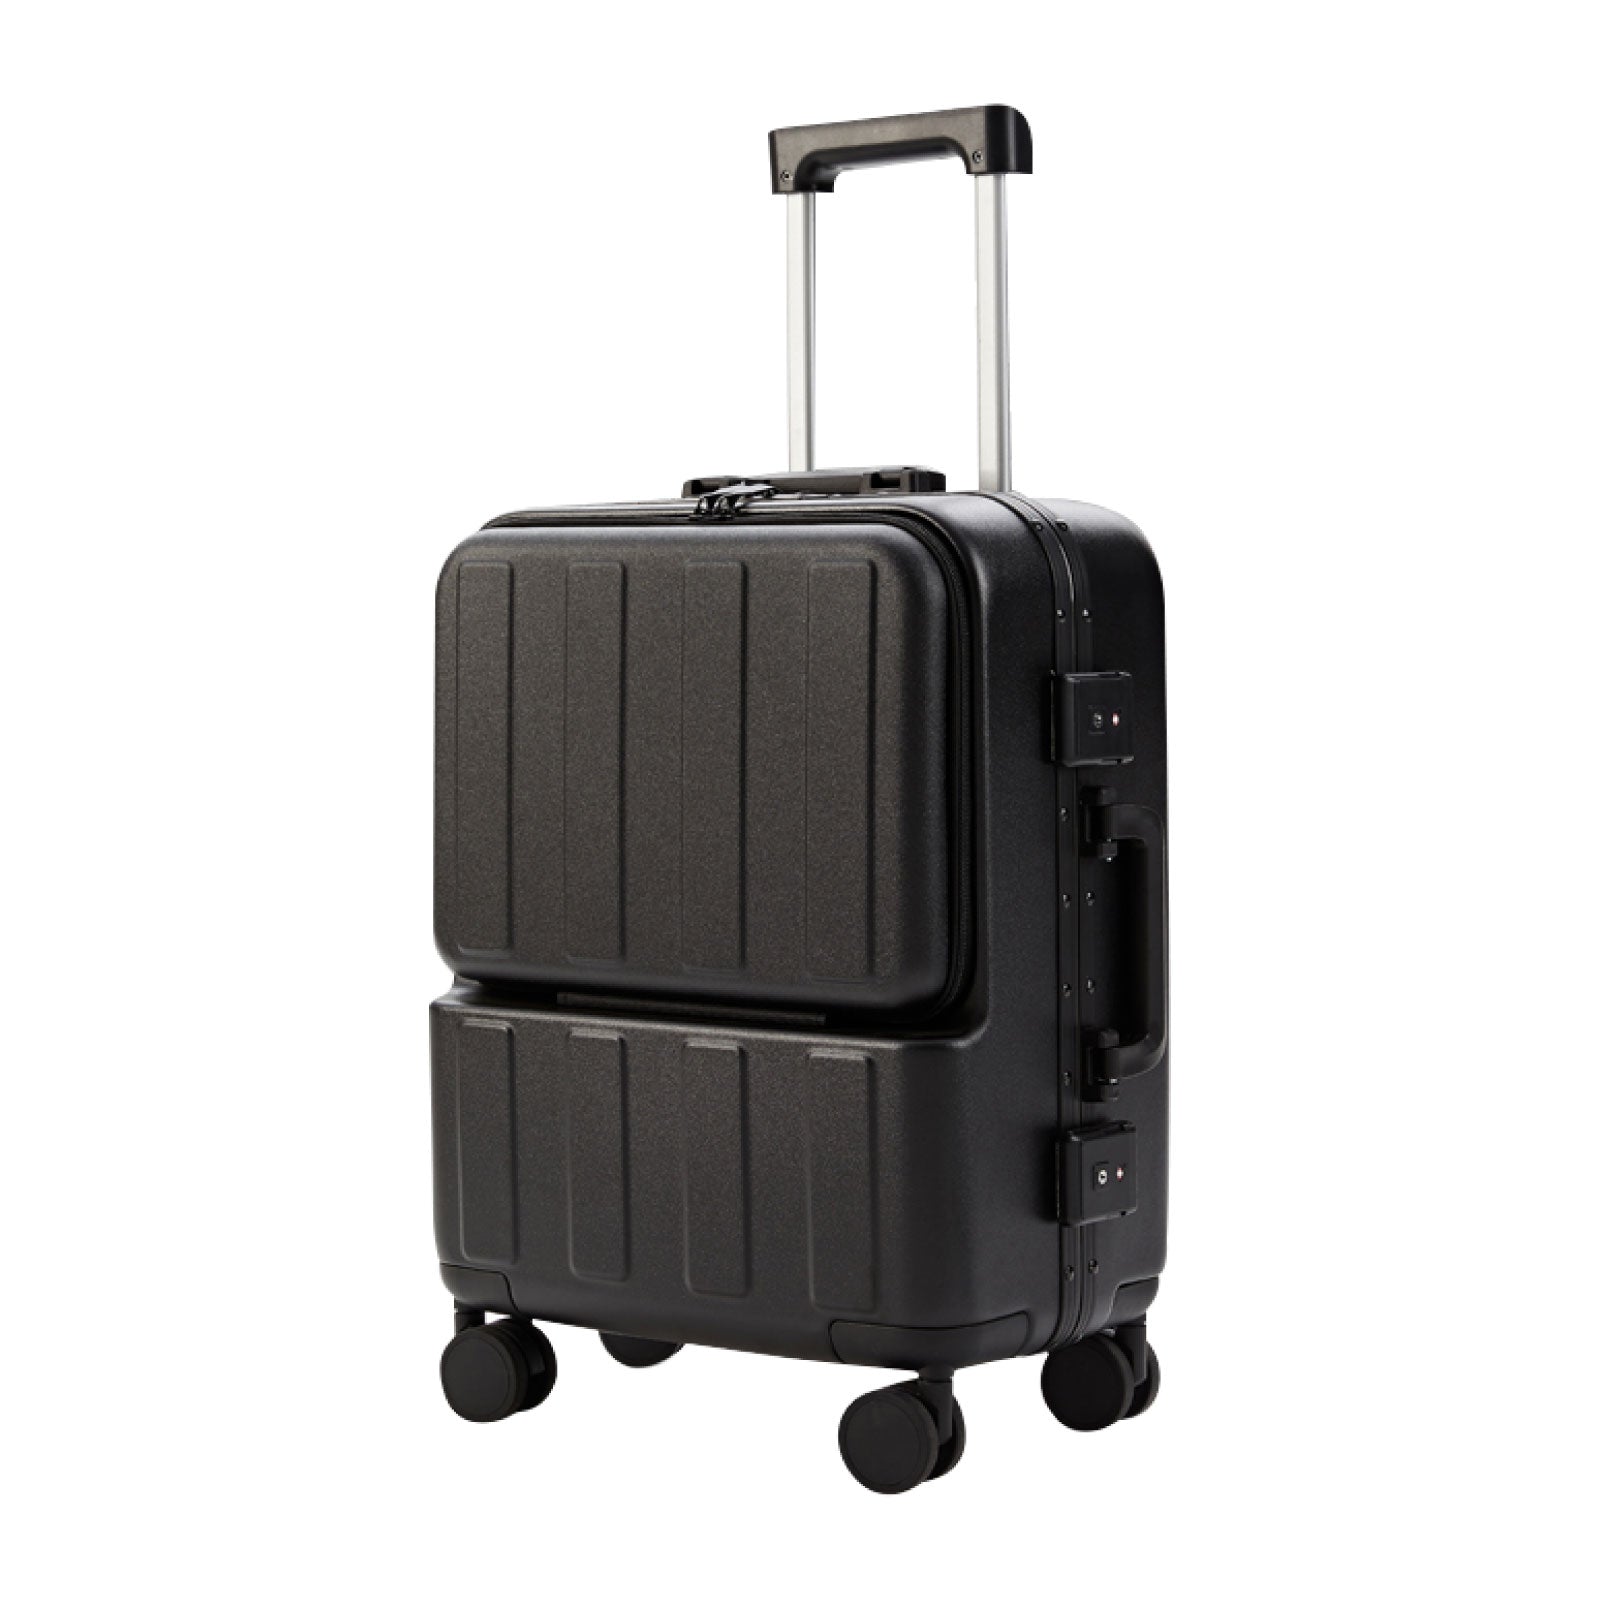 スーツケース キャリーケース キャリーバッグ 3カラー選ぶ Sサイズ 1-3日用 泊まる 軽量設計 大容量 トランク 修学旅行 海外旅行 国内旅行 sc179-20-sp